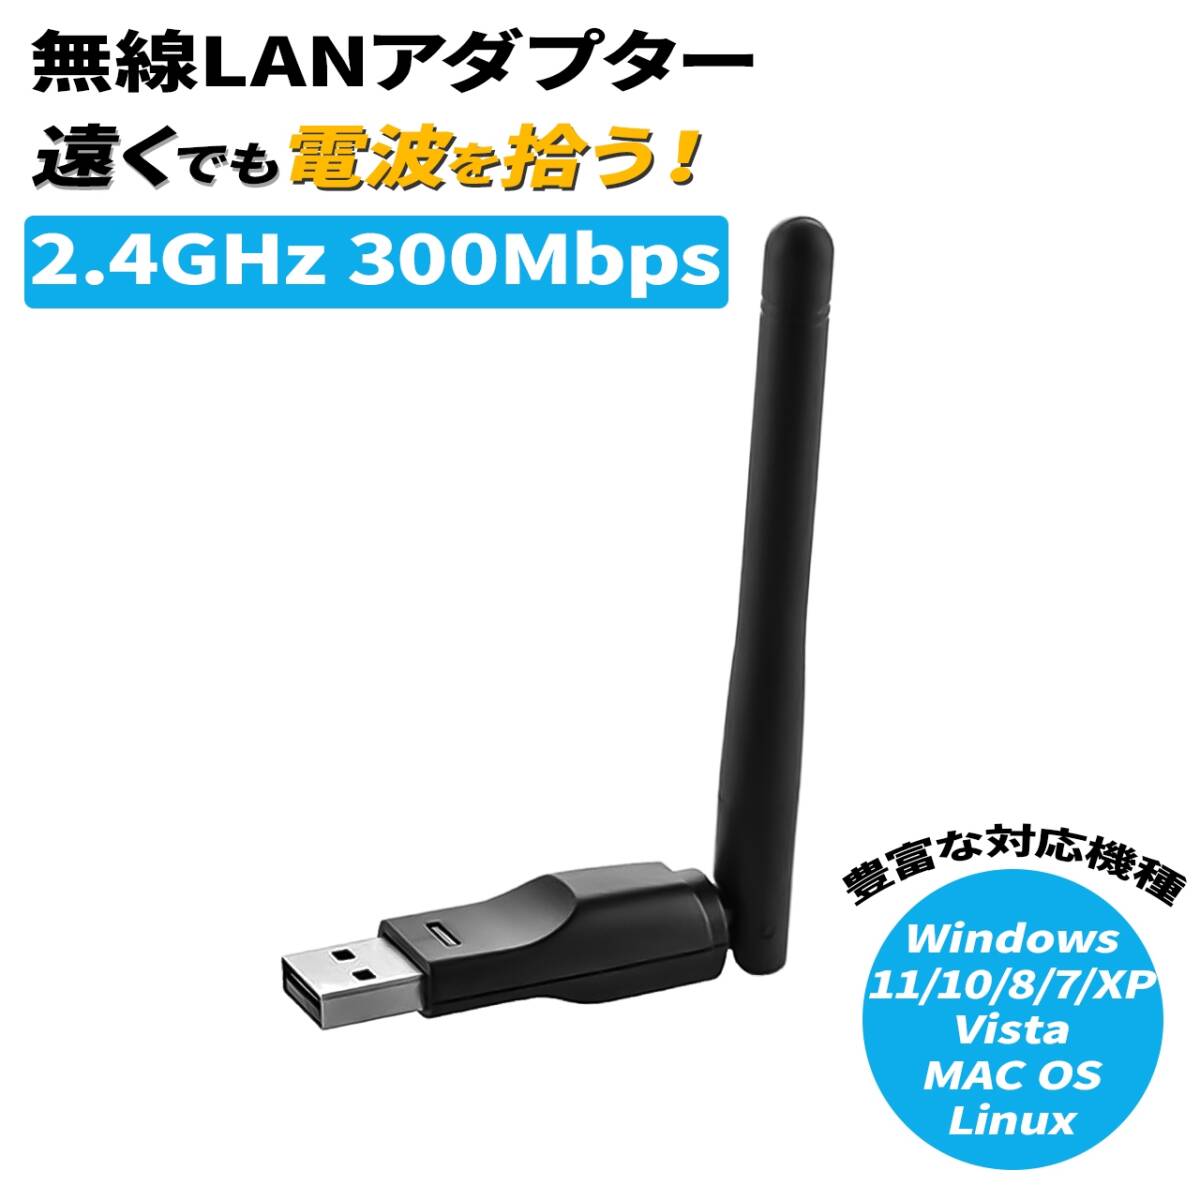 WiFi 無線LAN 子機 300Mbps 2.4GHｚ 無線lanアダプタ 管理番号2319の画像1